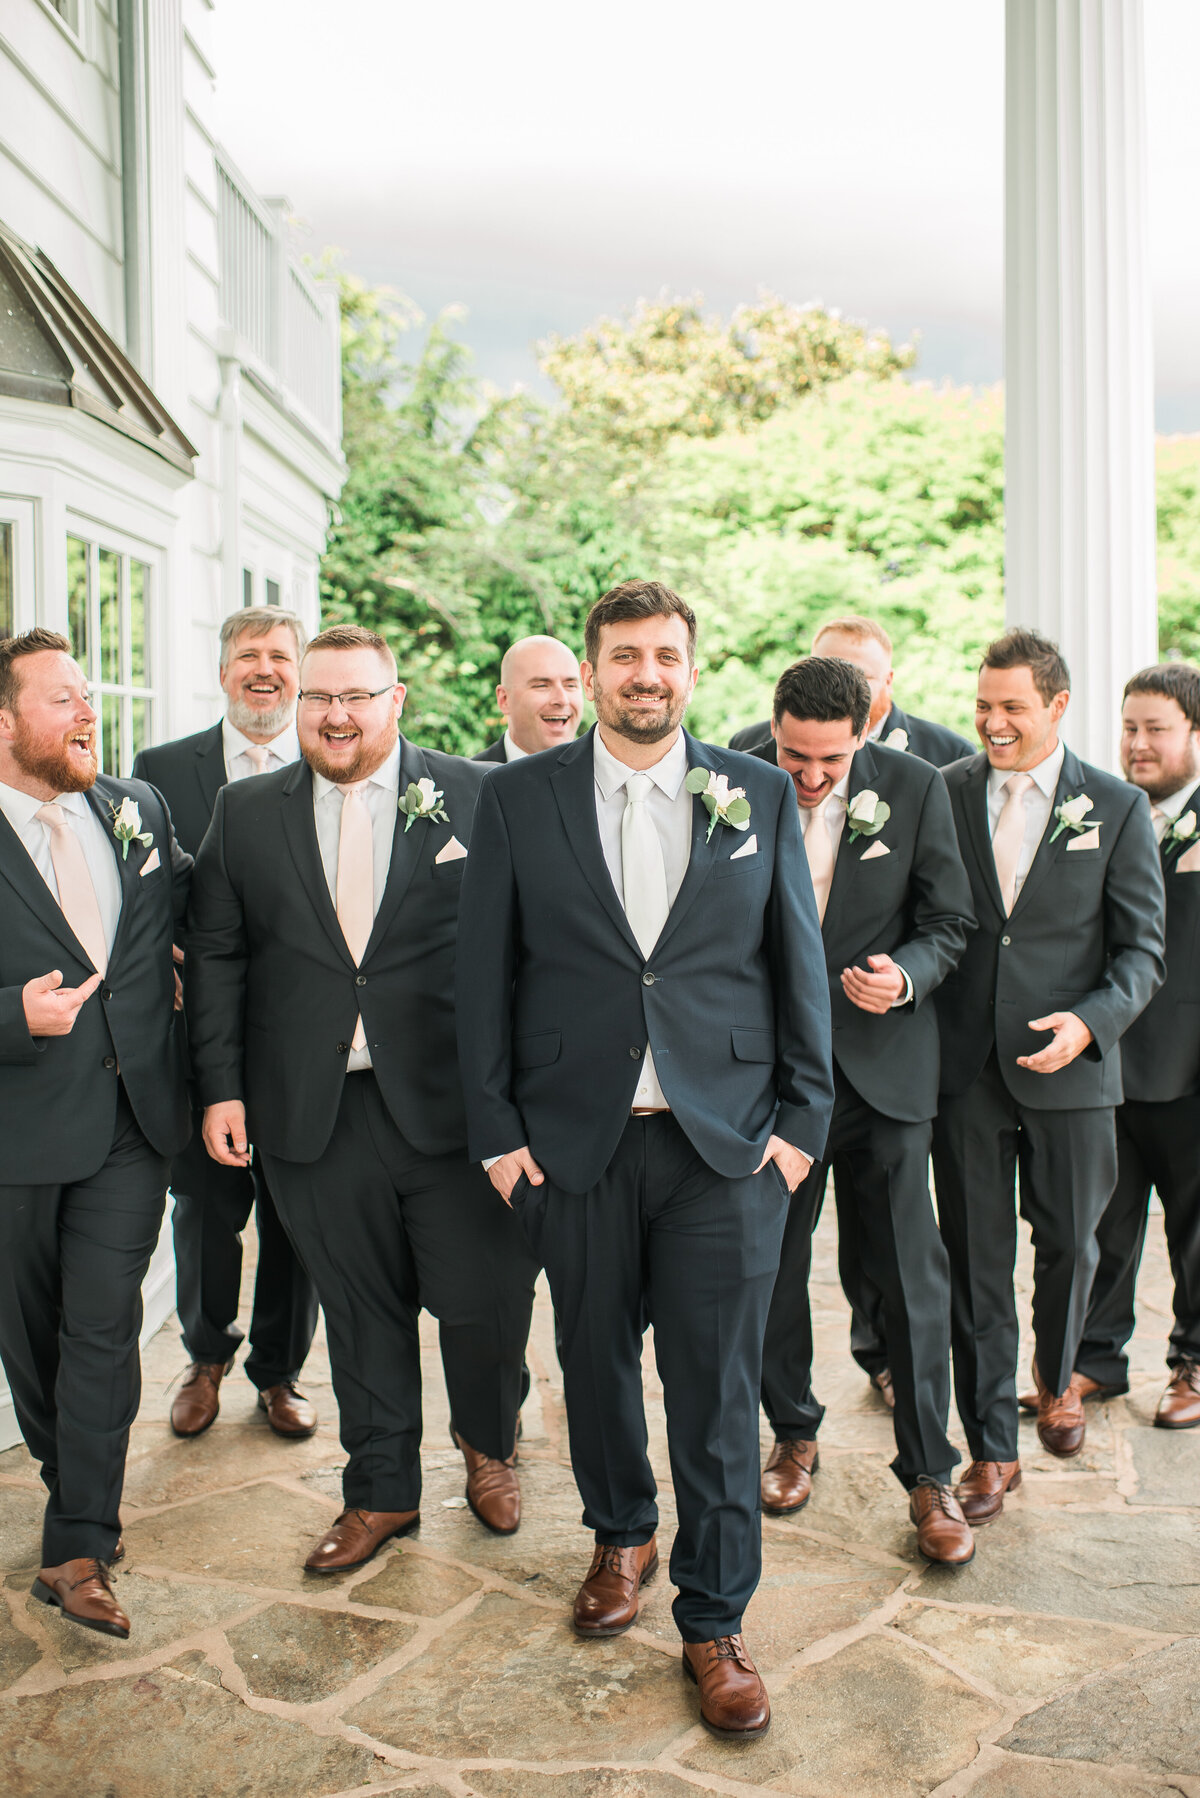 Group of groomsmen walking at bohemia overlook maryland wedding